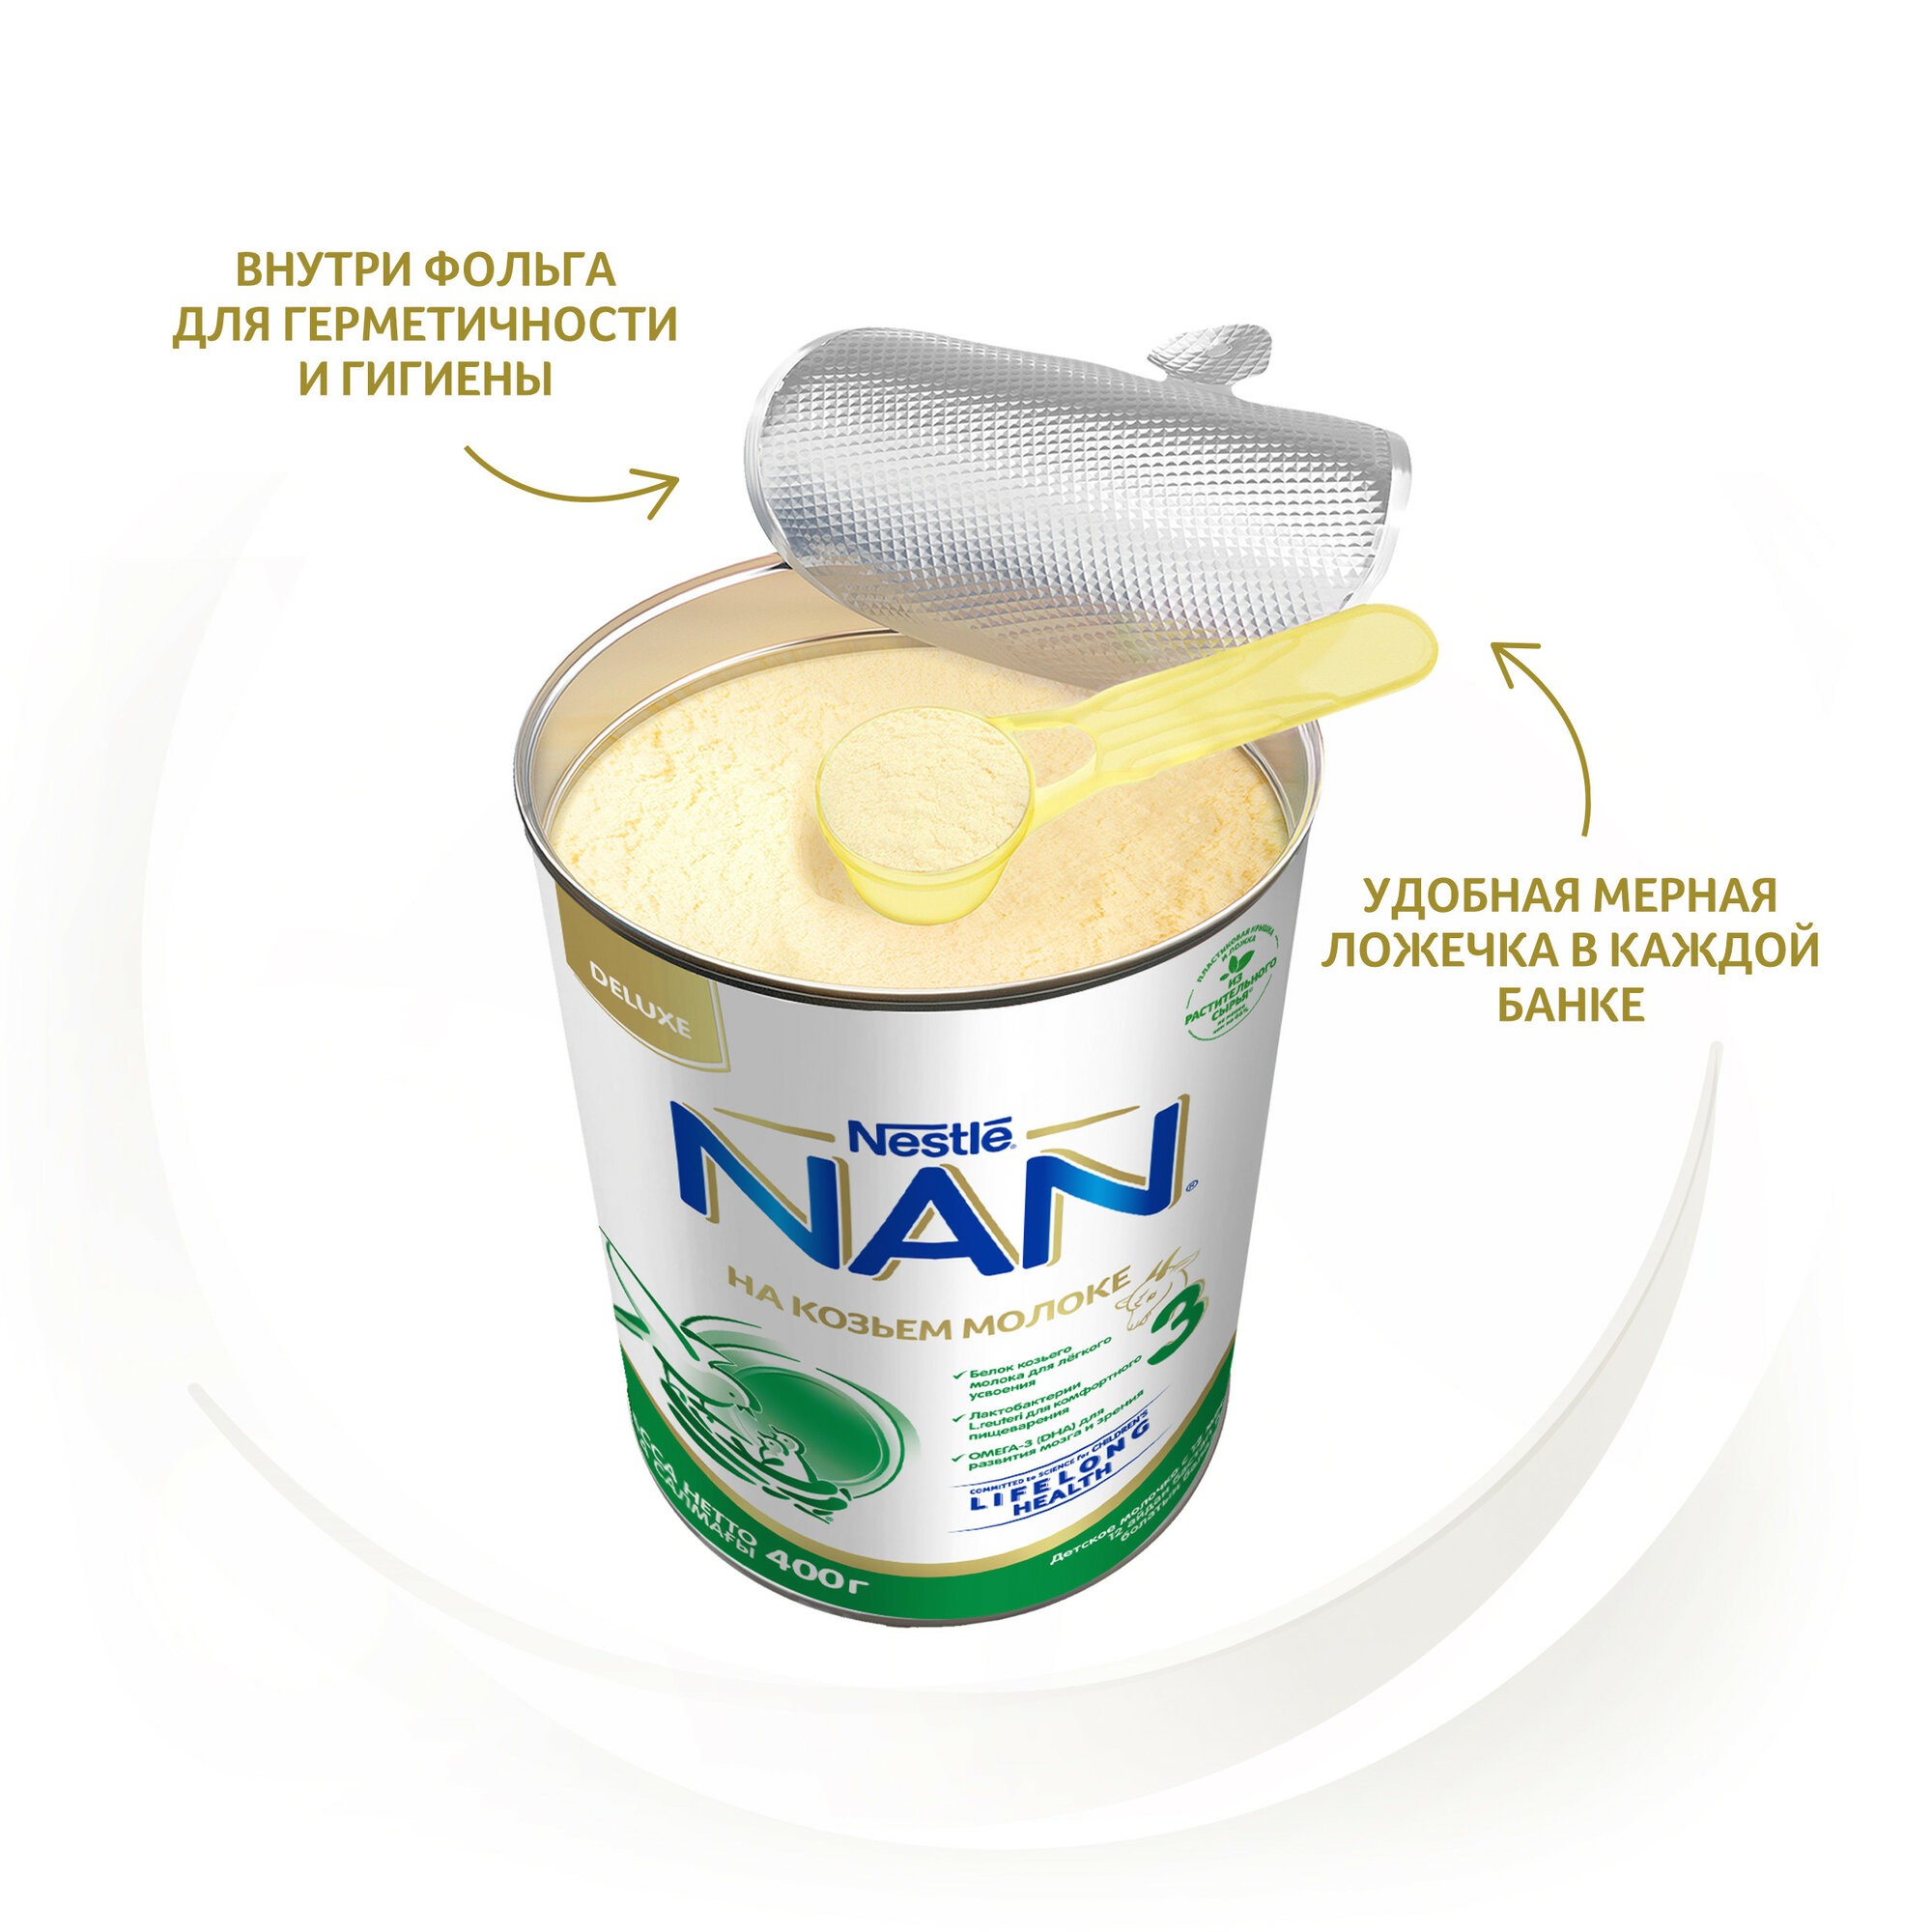 NAN® 3 GOAT Milk Сухая молочная смесь на козьем молоке, 400гр - фото №3